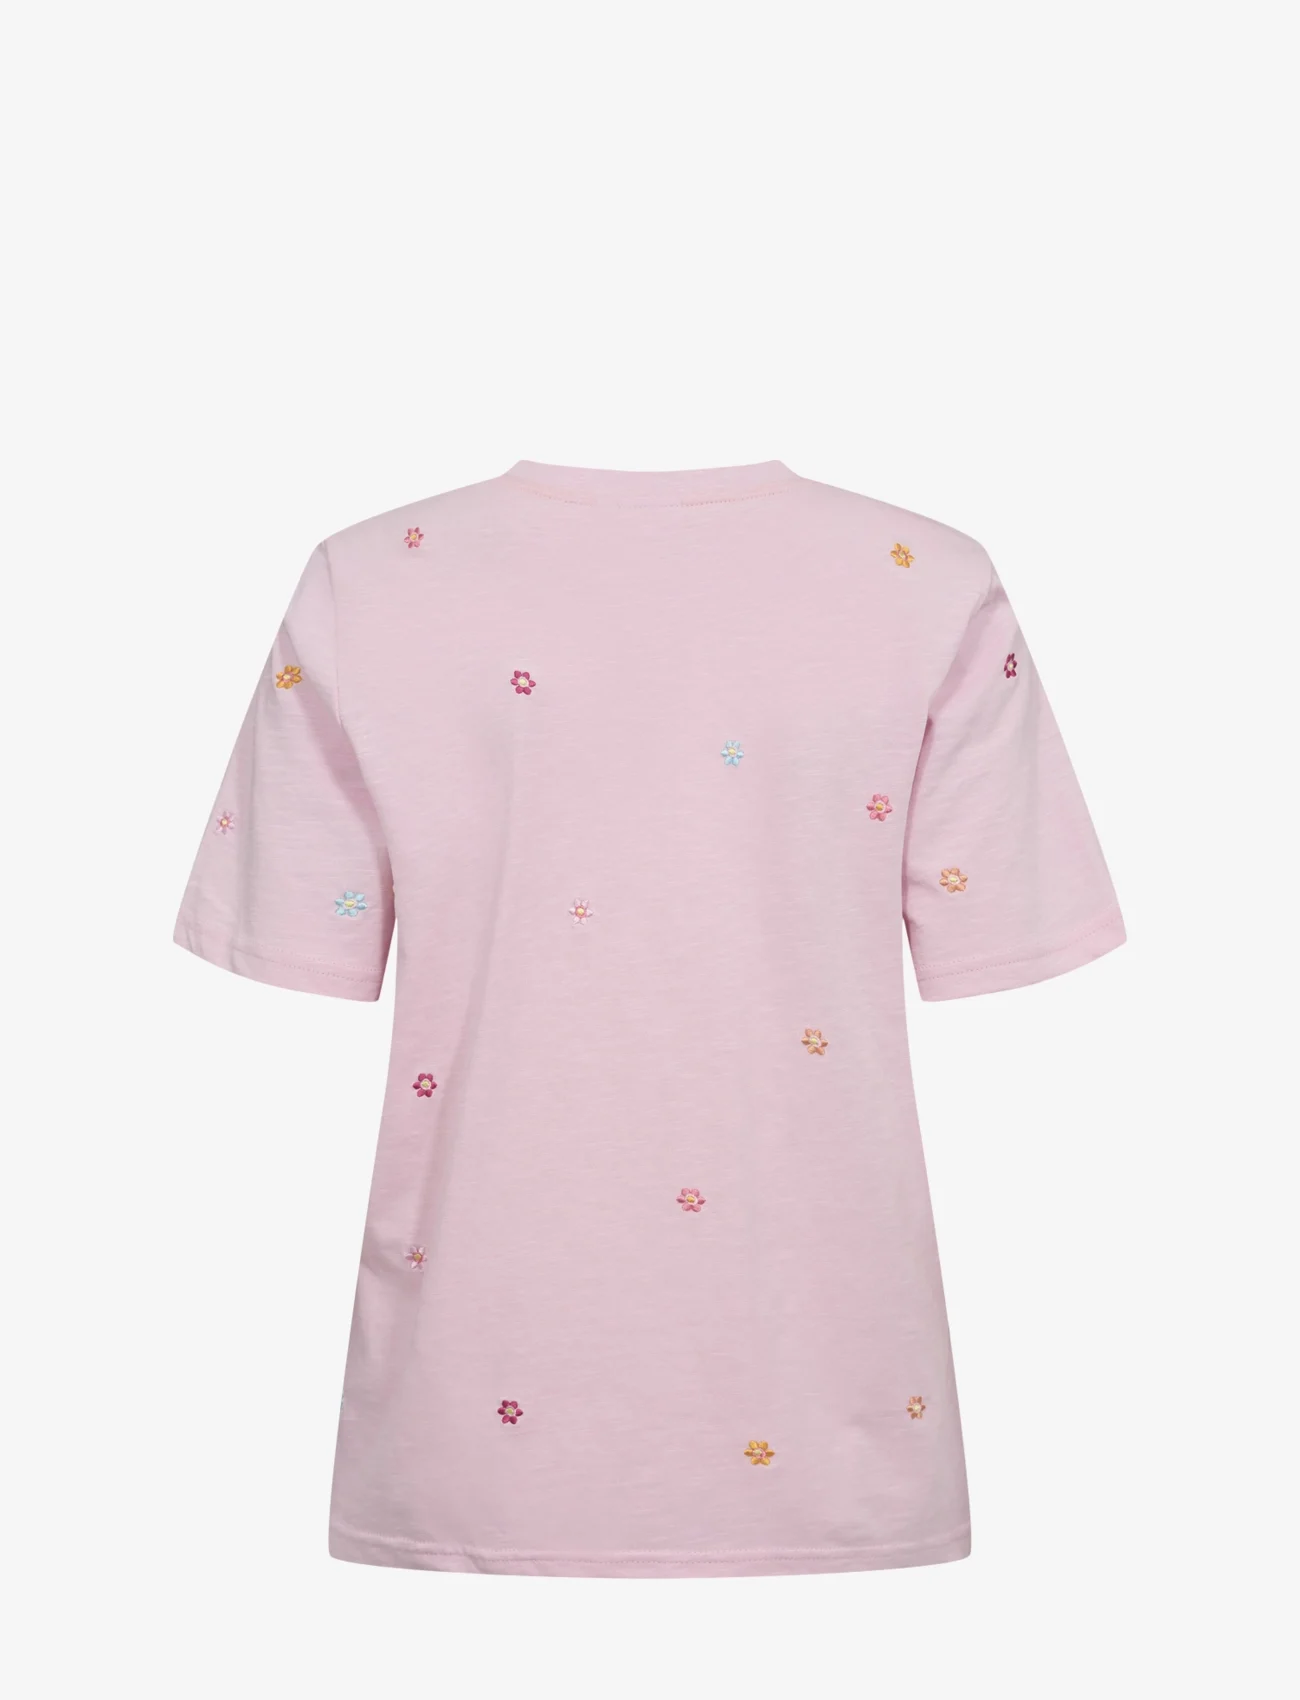 Nümph - NUPILAR T-SHIRT - GOTS - t-shirt & tops - roseate spoonbill - 1